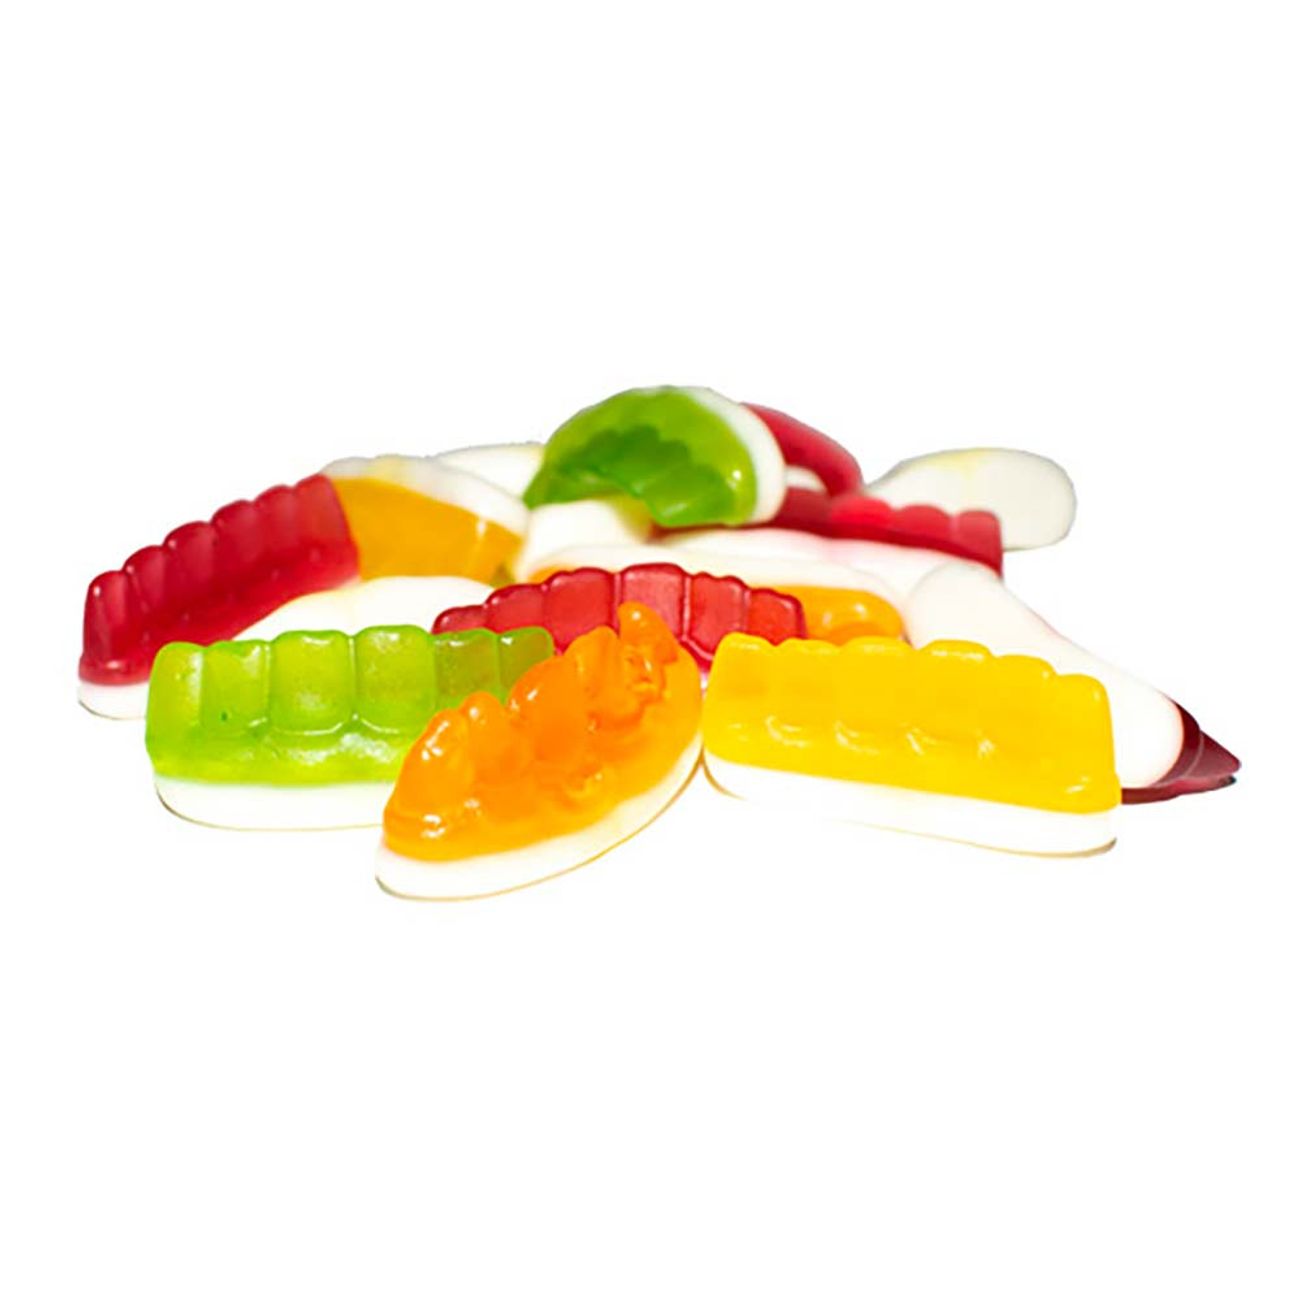 tander-fruktsmak-geleskum-storpack-94306-1